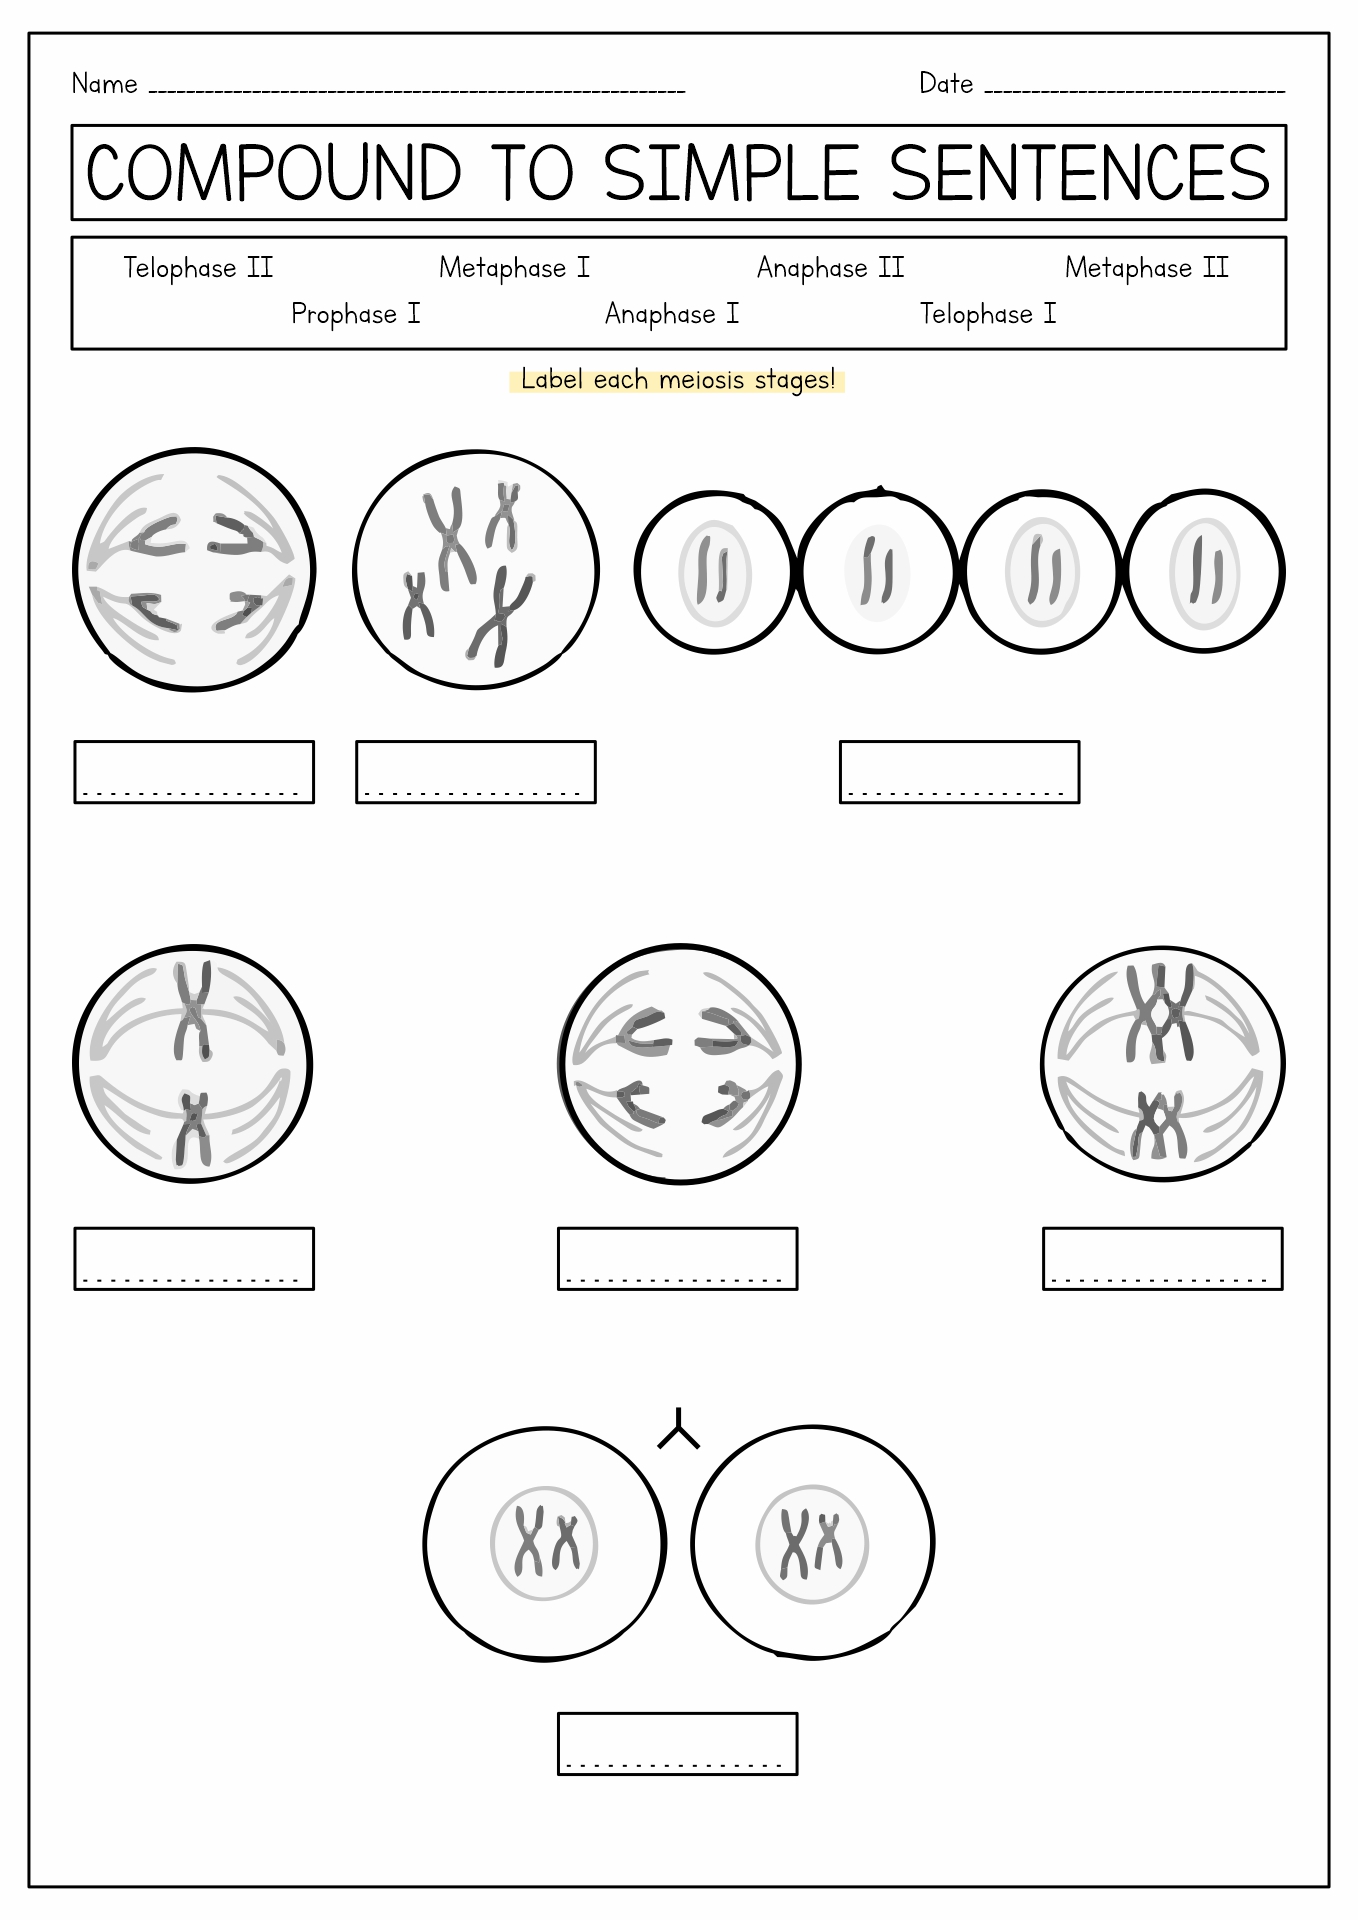 Meiosis Stages Worksheet Image